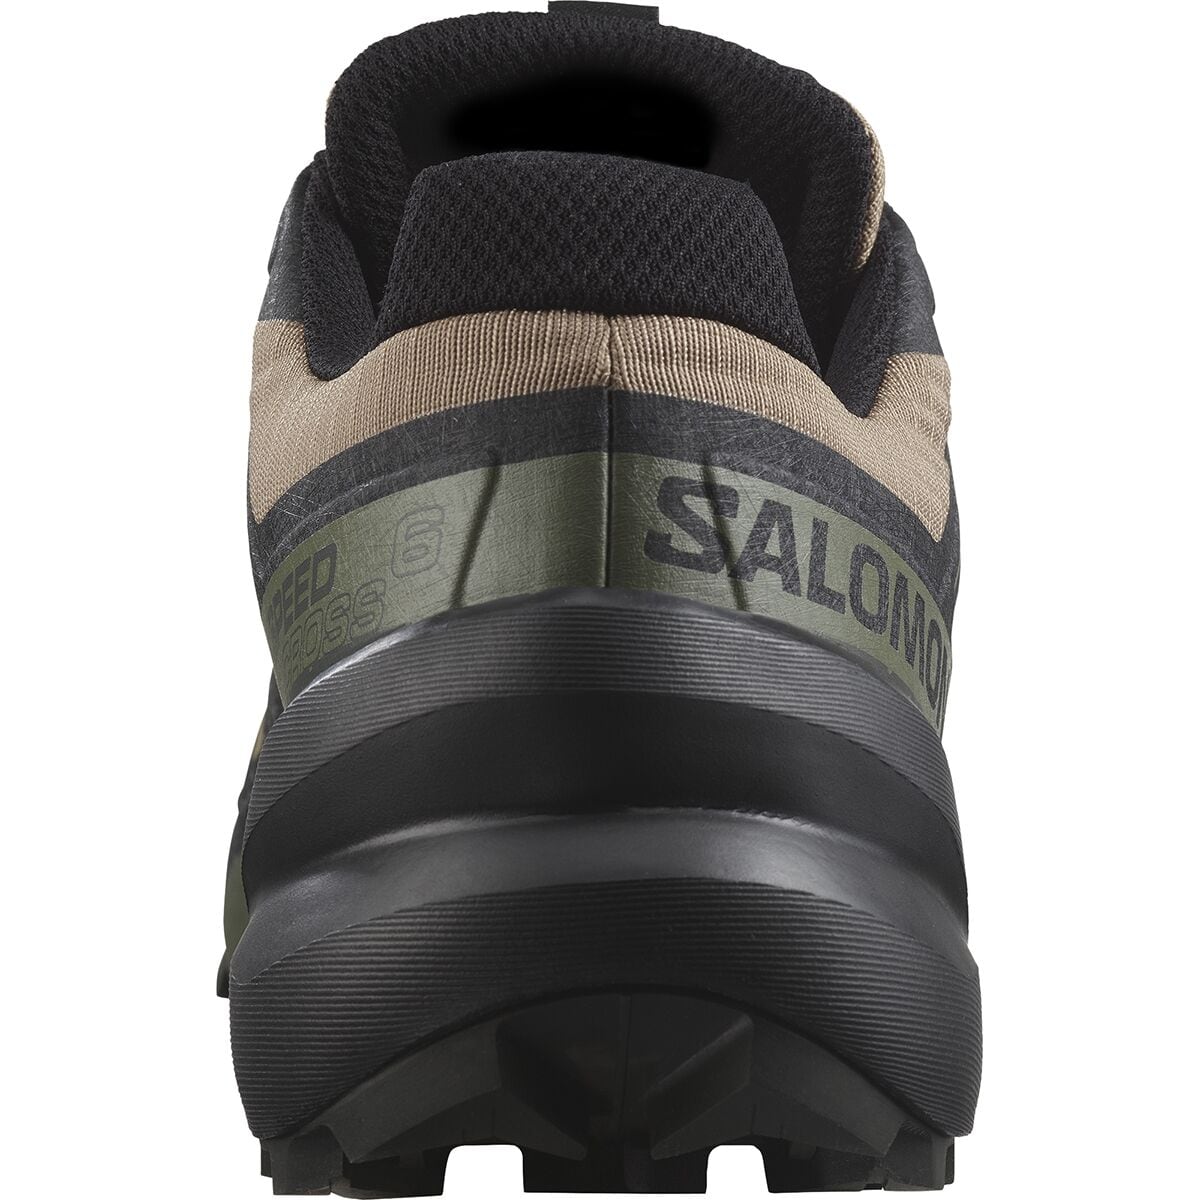 Zapatillas Salomon Speedcross 6 Hombre - Tienda de Deportes Outdoor,  Indumentaria Nautica y para la Montaña, Kayak y Campamento